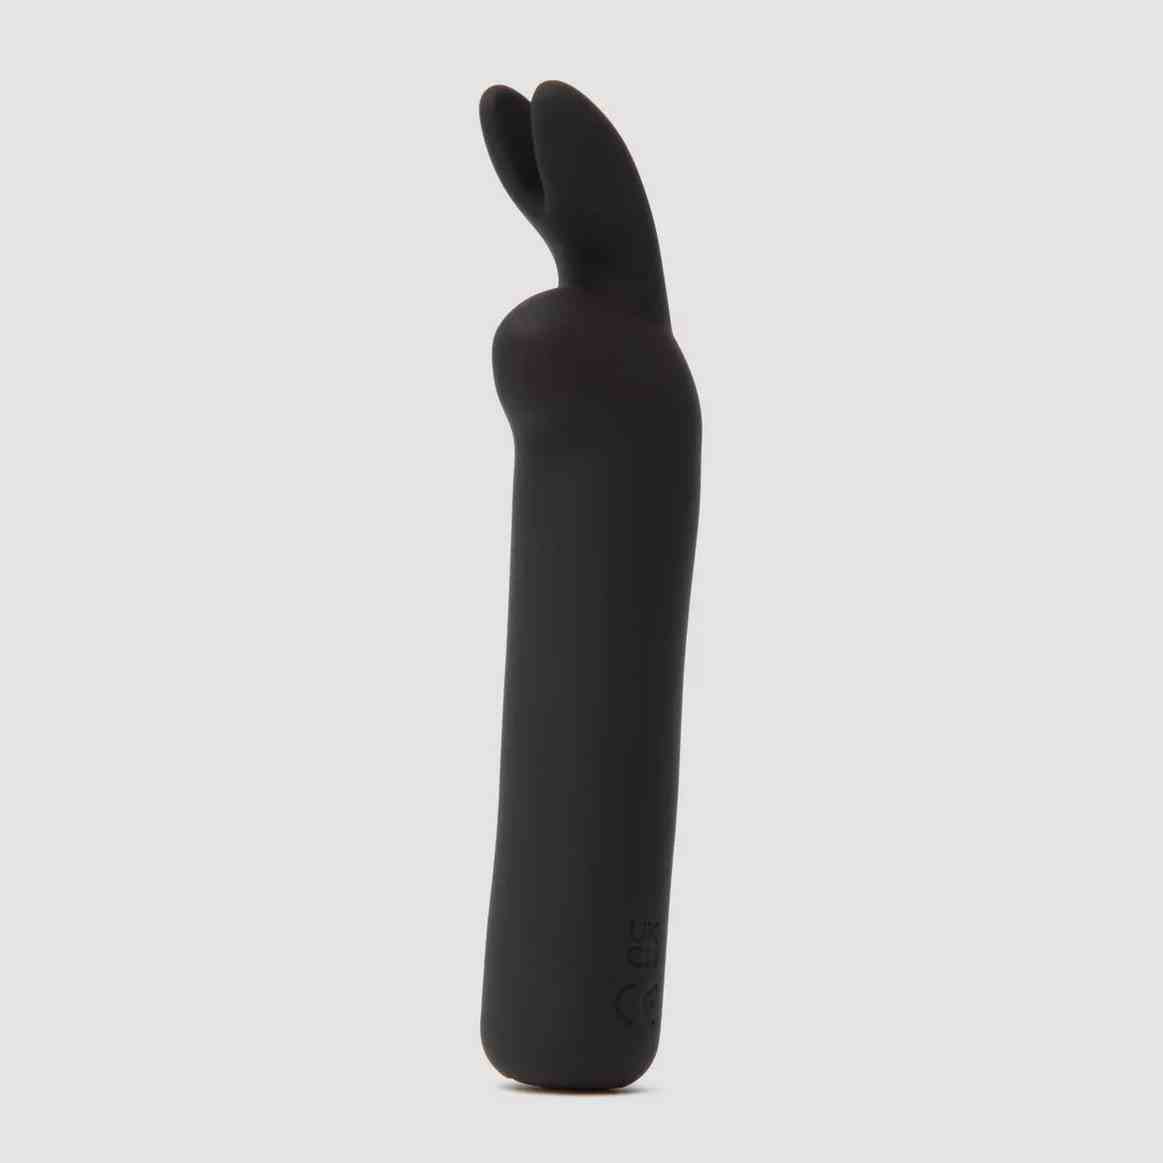 Happy Rabbit Rabbit Ears Bullet Vibrator schwarzer Vibrator mit Hasenohren auf grauem Hintergrund